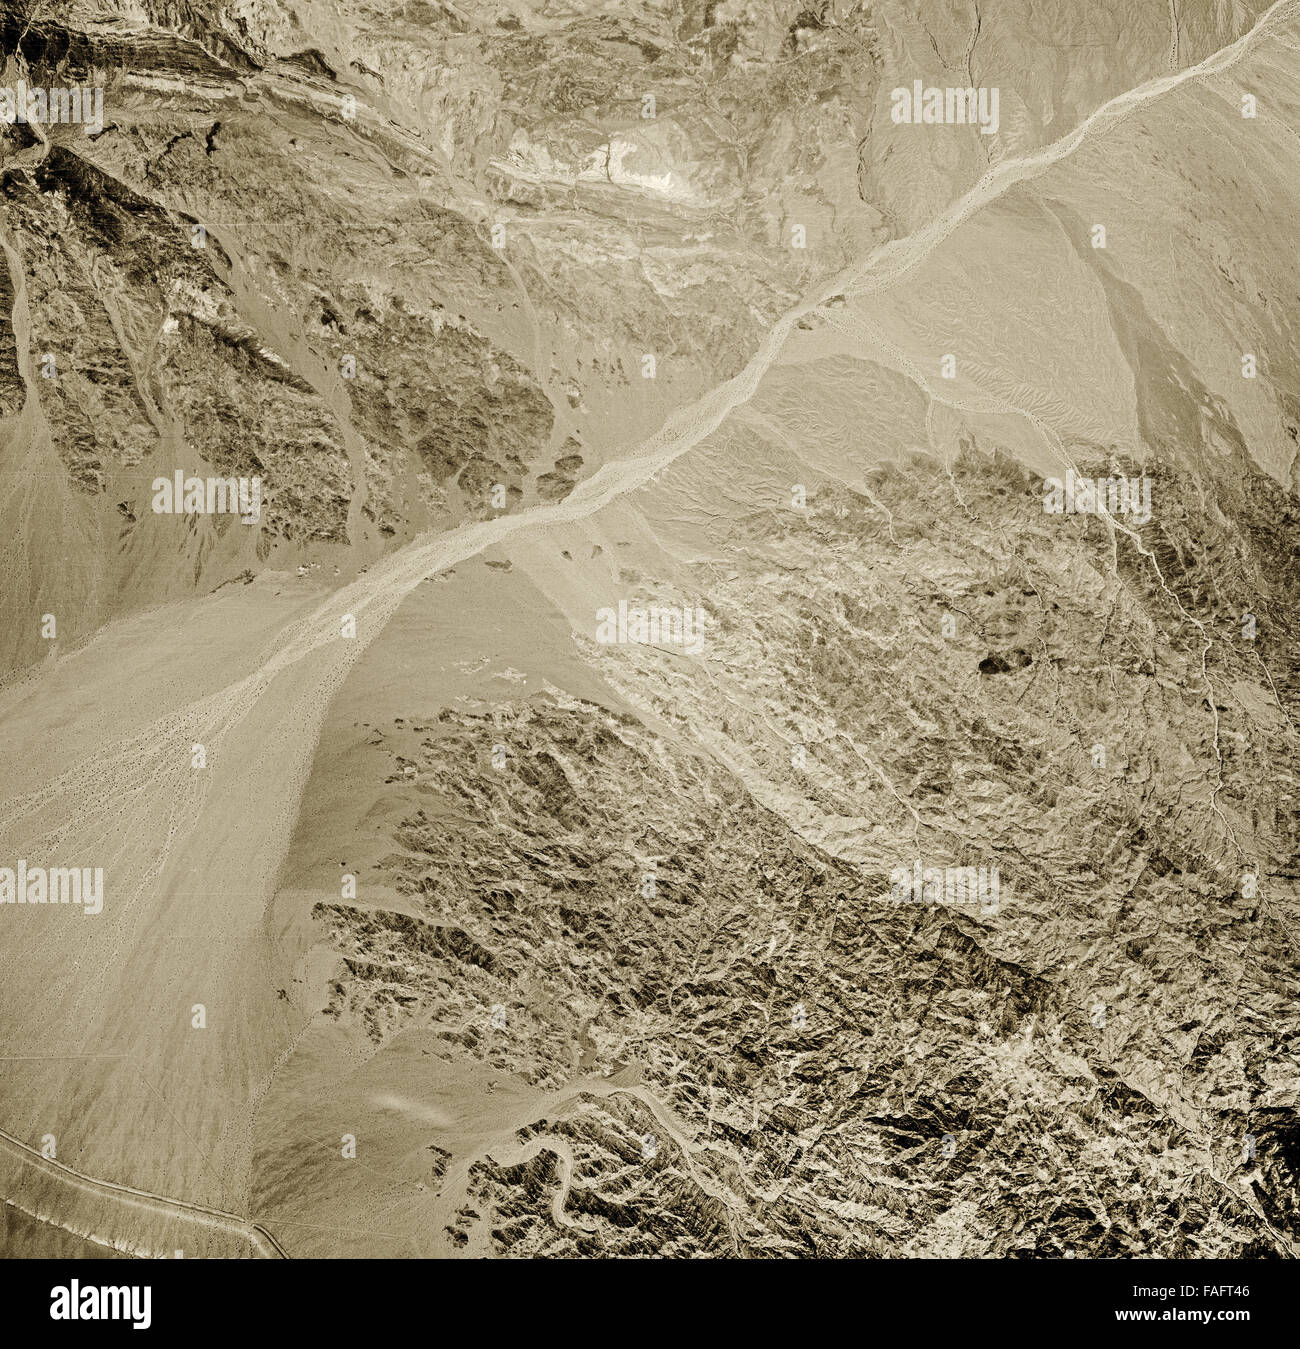 historische Luftaufnahme des Gebiets östlich von Salton Sea, Imperial County, Kalifornien, 1947 Stockfoto